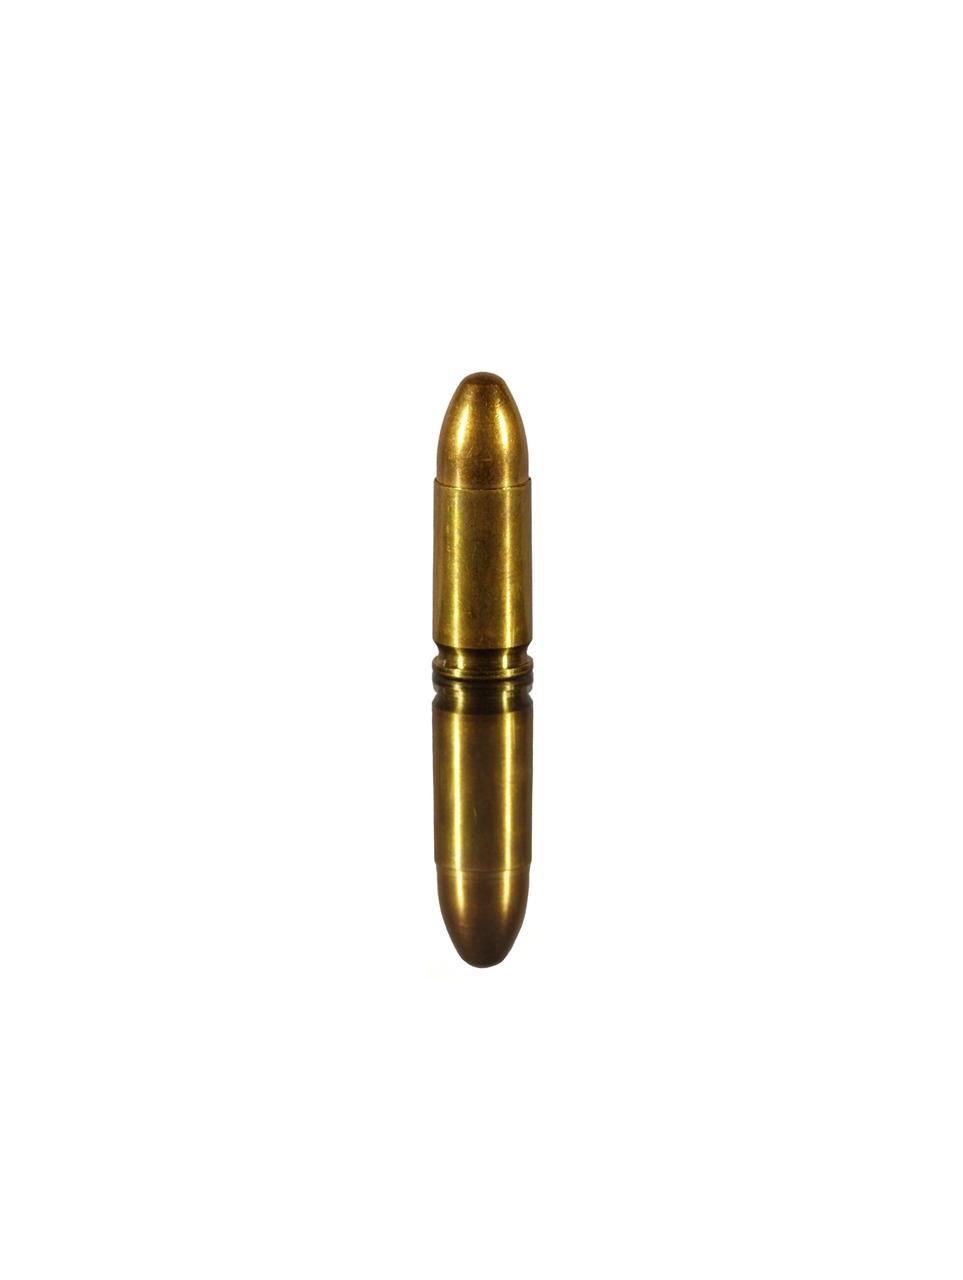 ammunition ball cartridge free photo